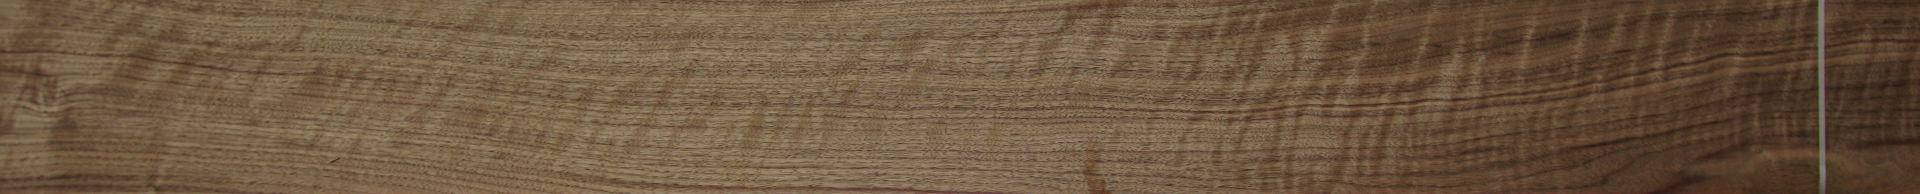 0,6mm Nussbaum amerikanisch (Riegel) Furnier 14,59m² K 32 285 16